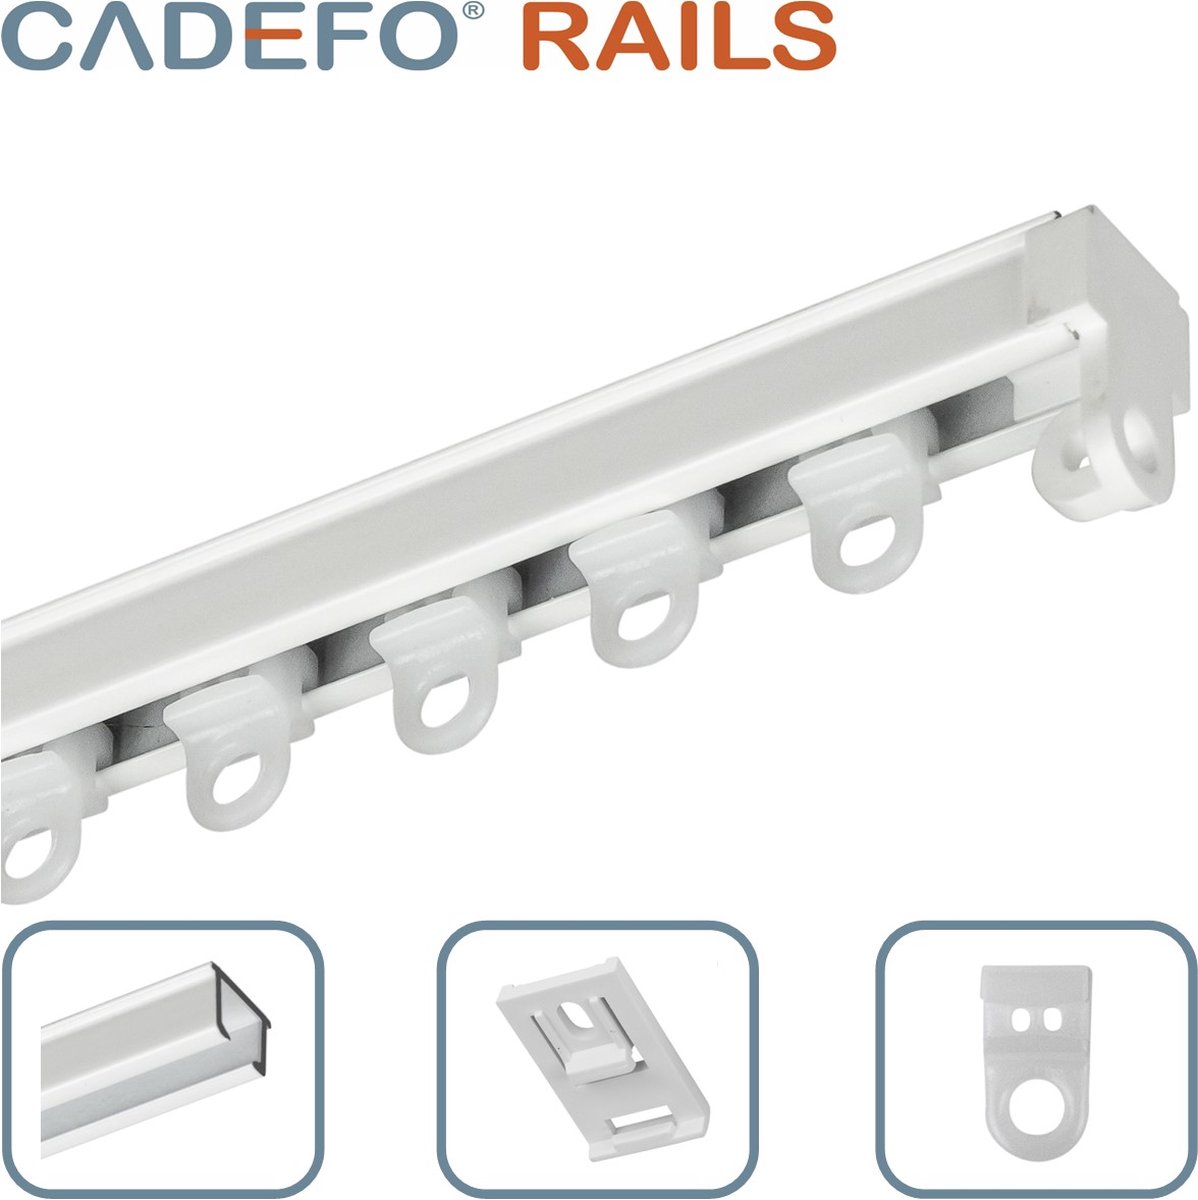 CADEFO RAILS (201 - 250 cm) Gordijnrails - Compleet op maat! - UIT 1 STUK - Leverbaar tot 6 meter - Plafondbevestiging - Lengte 208 cm